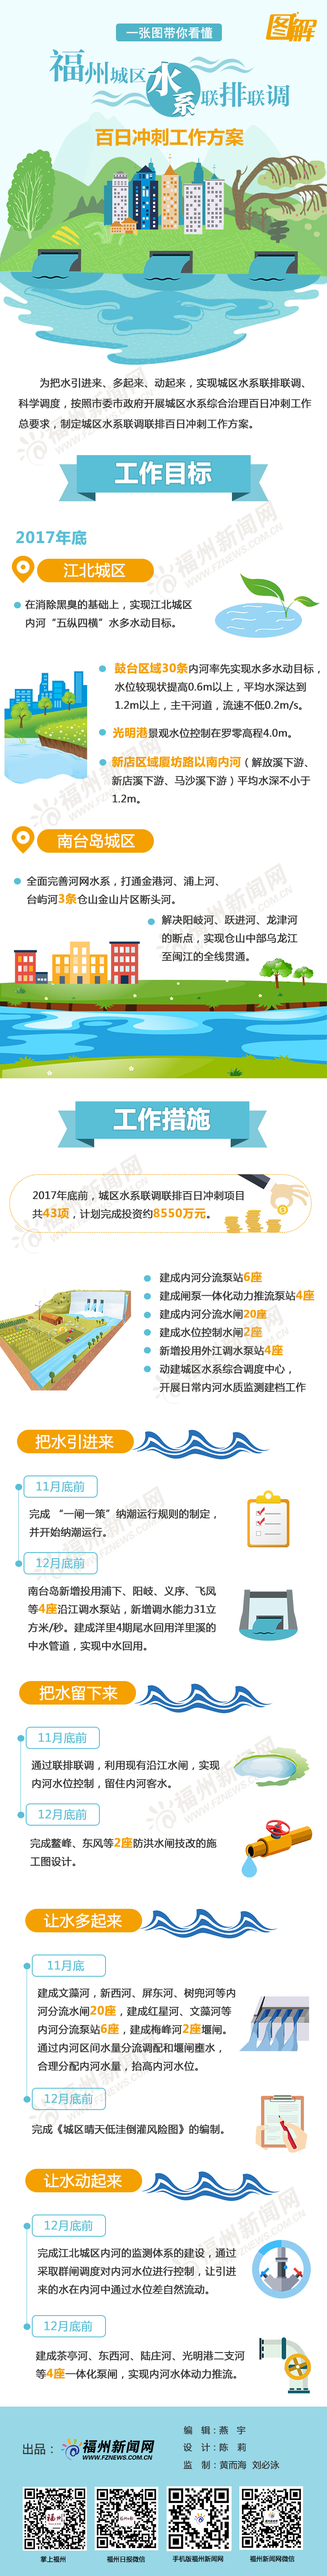 一张图带你看懂福州城区水系联排联调百日冲刺工作方案